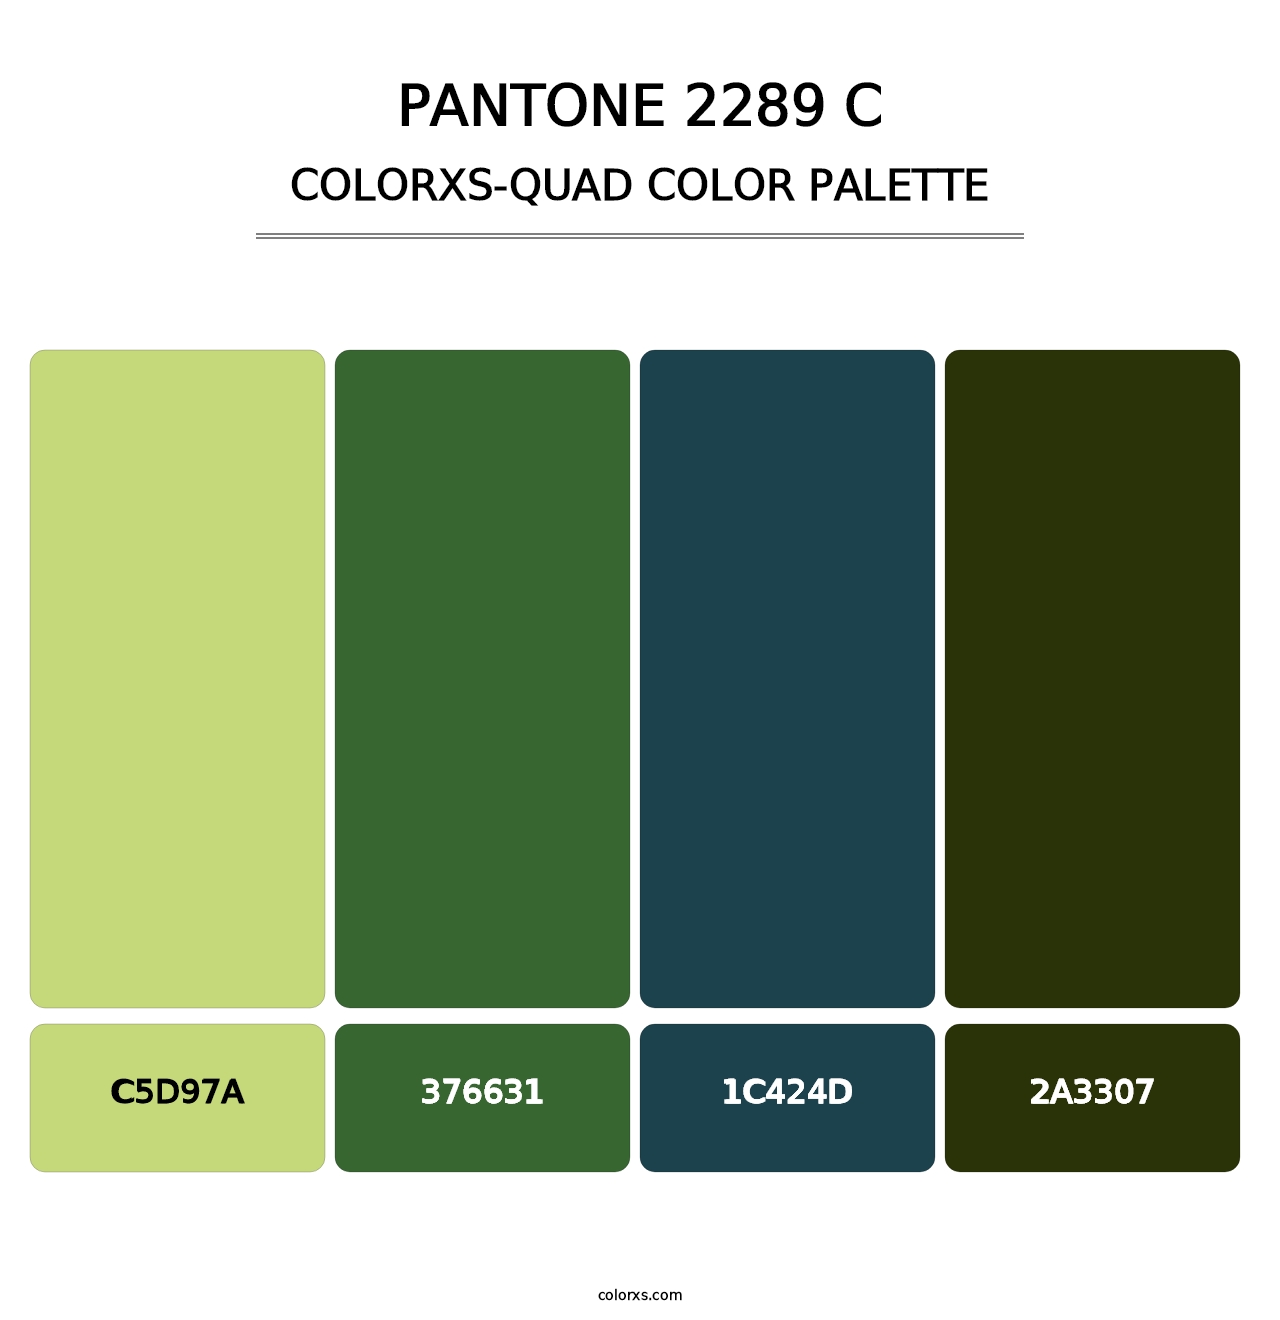 PANTONE 2289 C - Colorxs Quad Palette